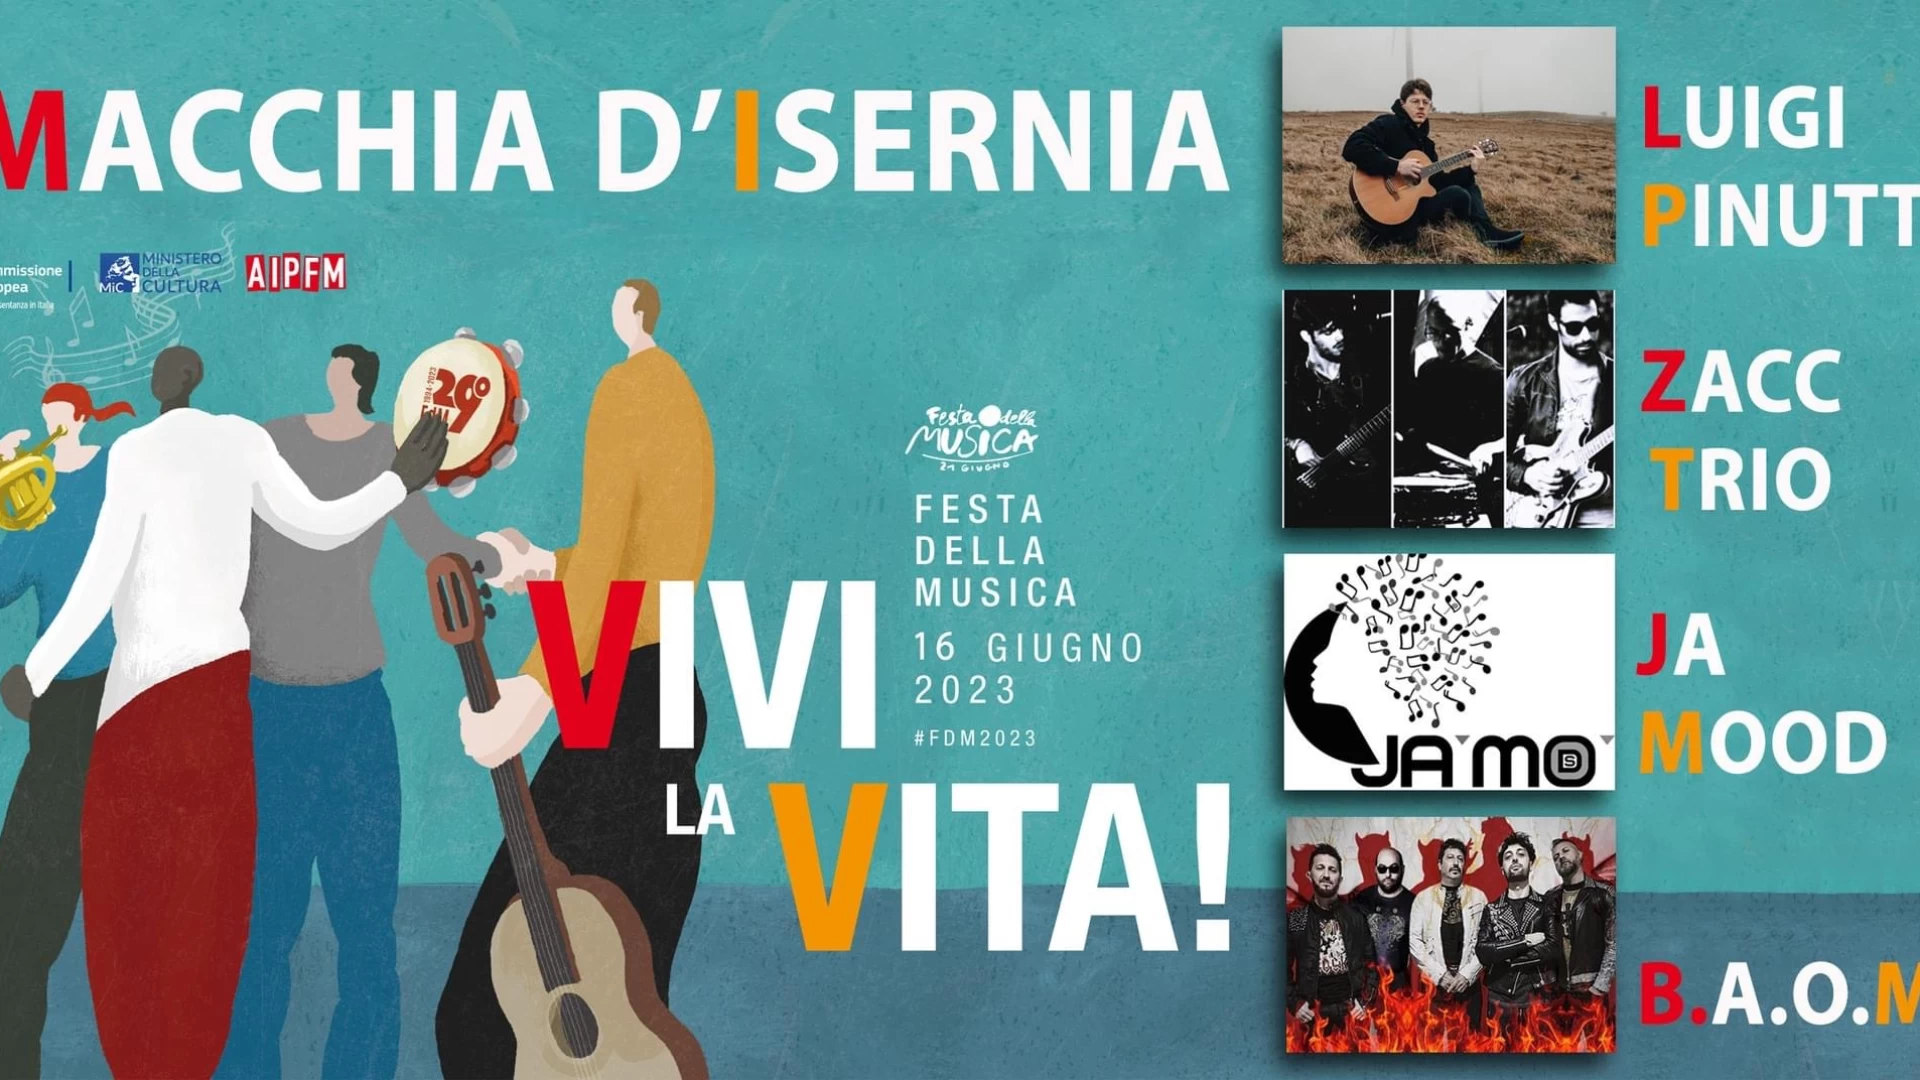 Macchia d'Isernia: festa della musica, quarto anno consecutivo di partecipazione per il comune molisano. Appuntamento per venerdì 16 giugno.